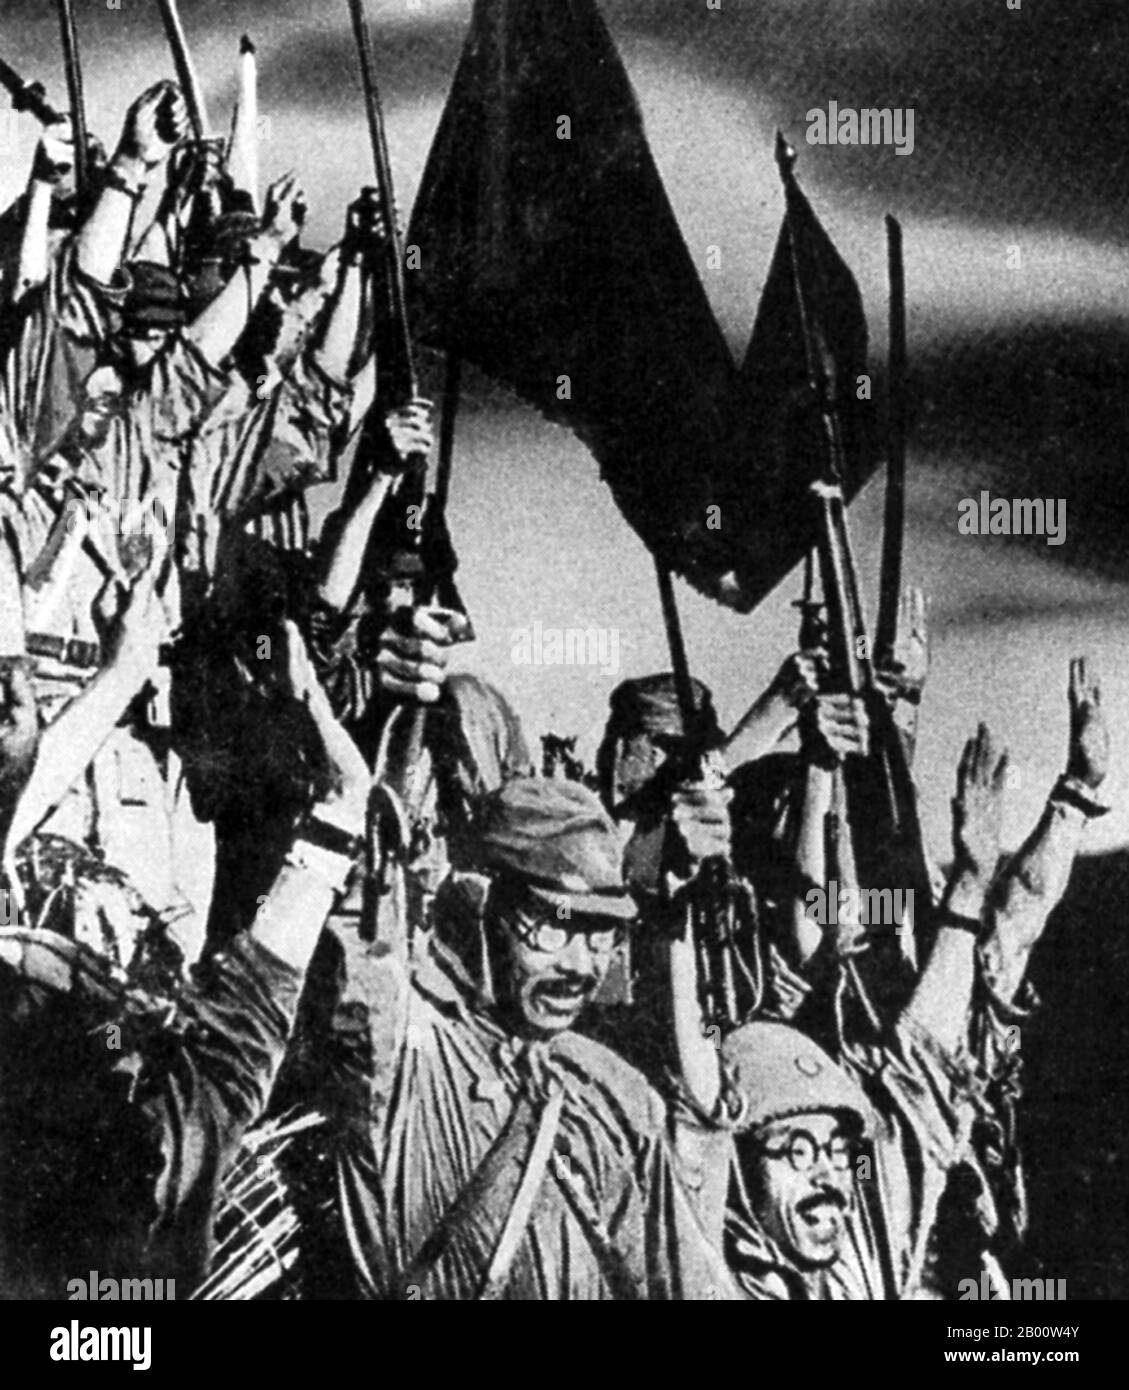 Philippines : les troupes impériales japonaises célèbrent la capture de Bataan en mai 1942. La bataille de Bataan est célèbre dans l'histoire comme l'un des derniers stands de soldats américains et philippins avant d'être submergés par les forces japonaises pendant la Seconde Guerre mondiale Avant l'invasion japonaise de 1941, l'armée américaine a entreposé près de 1,000,000 gallons US d'essence à Bataan. Peu après l'invasion du pays par l'armée japonaise en décembre 1941, les forces américaines et Philippines combinées étaient progressivement déployées et le général Douglas MacArthur a déplacé ses troupes dans la péninsule de Bataan pour tenter de se maintenir. Banque D'Images